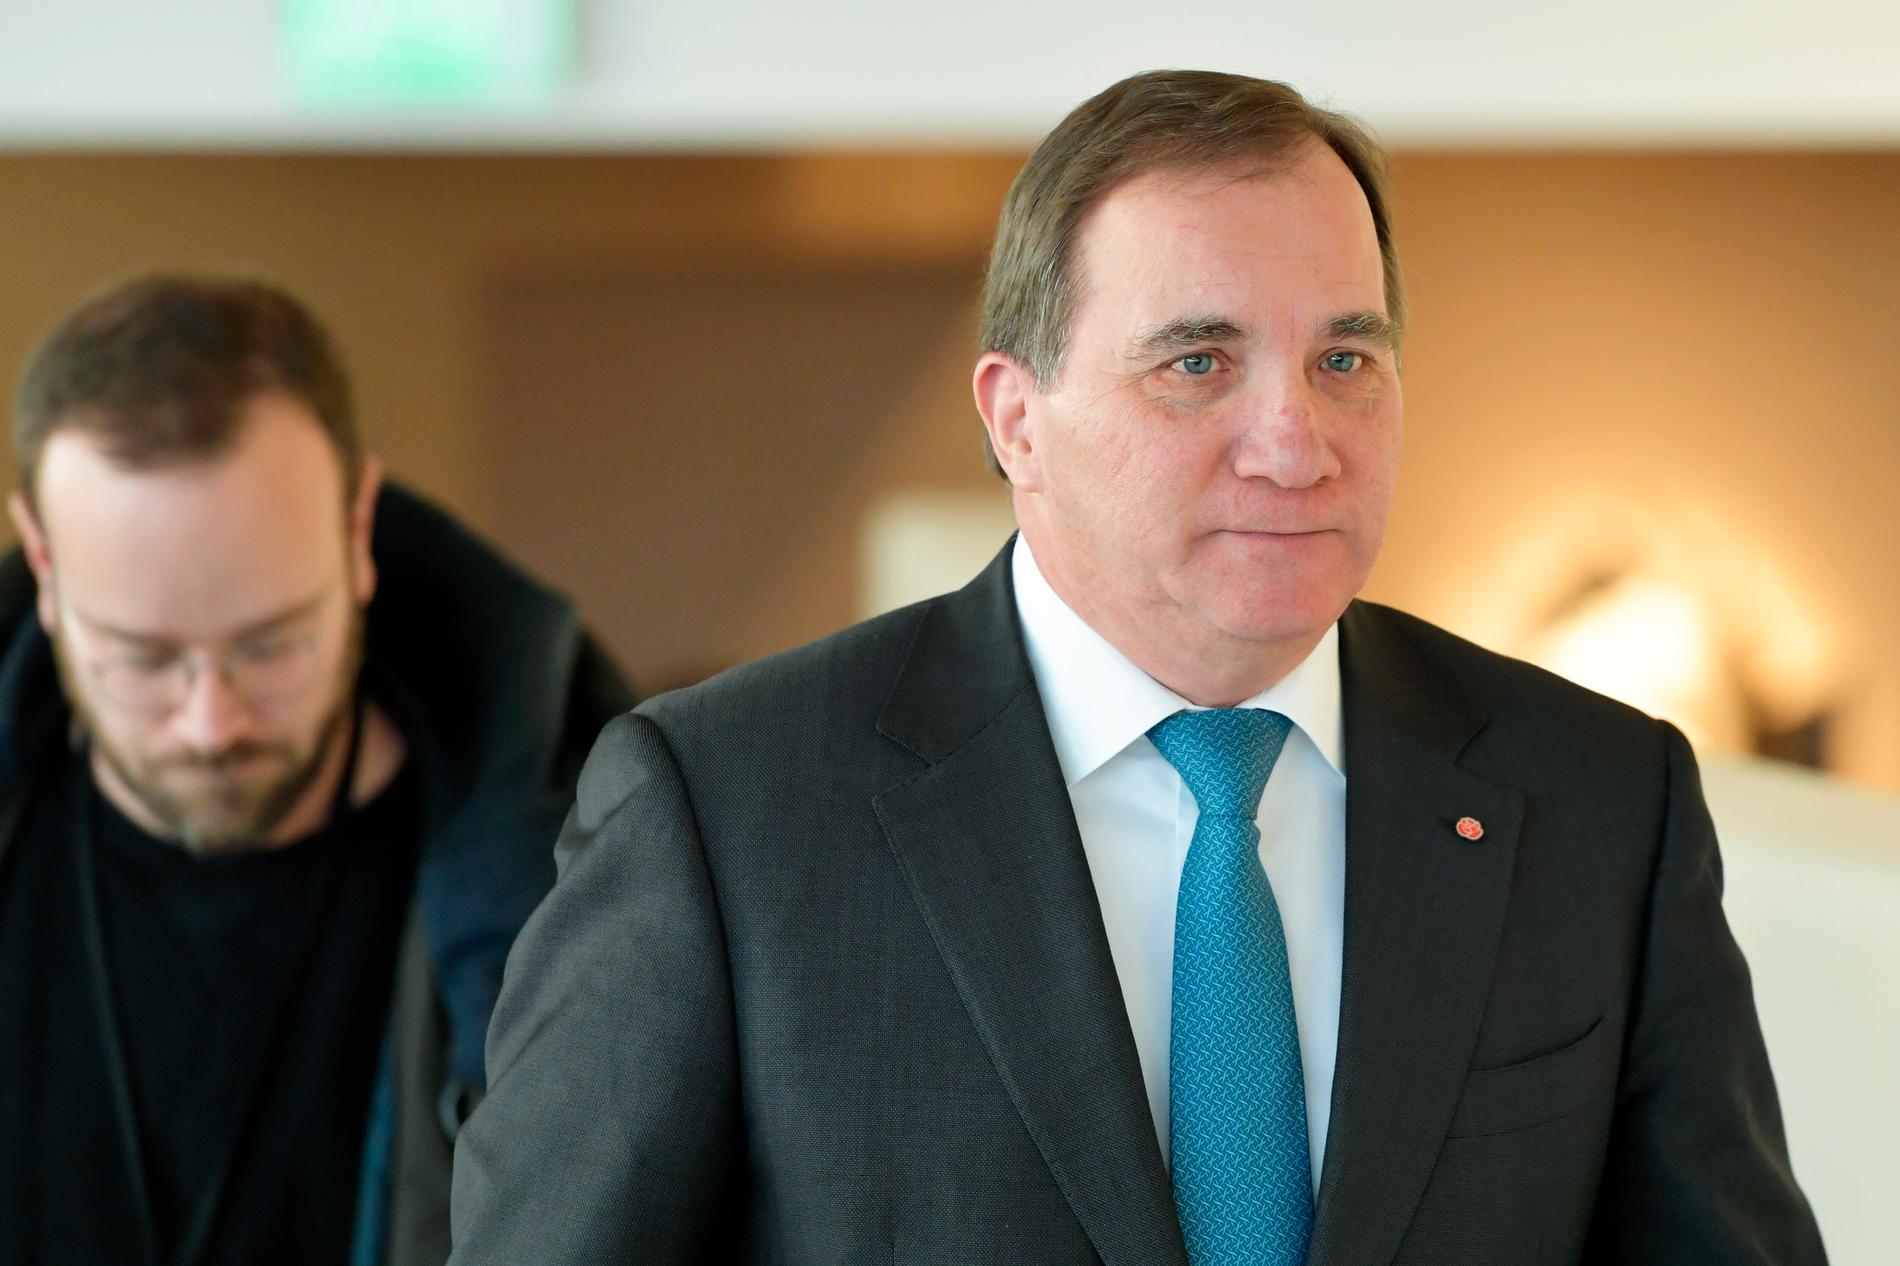 S-ledaren Stefan Löfven förhandlar under tidspress för att kunna behålla jobbet som statsminister. Arkivbild.